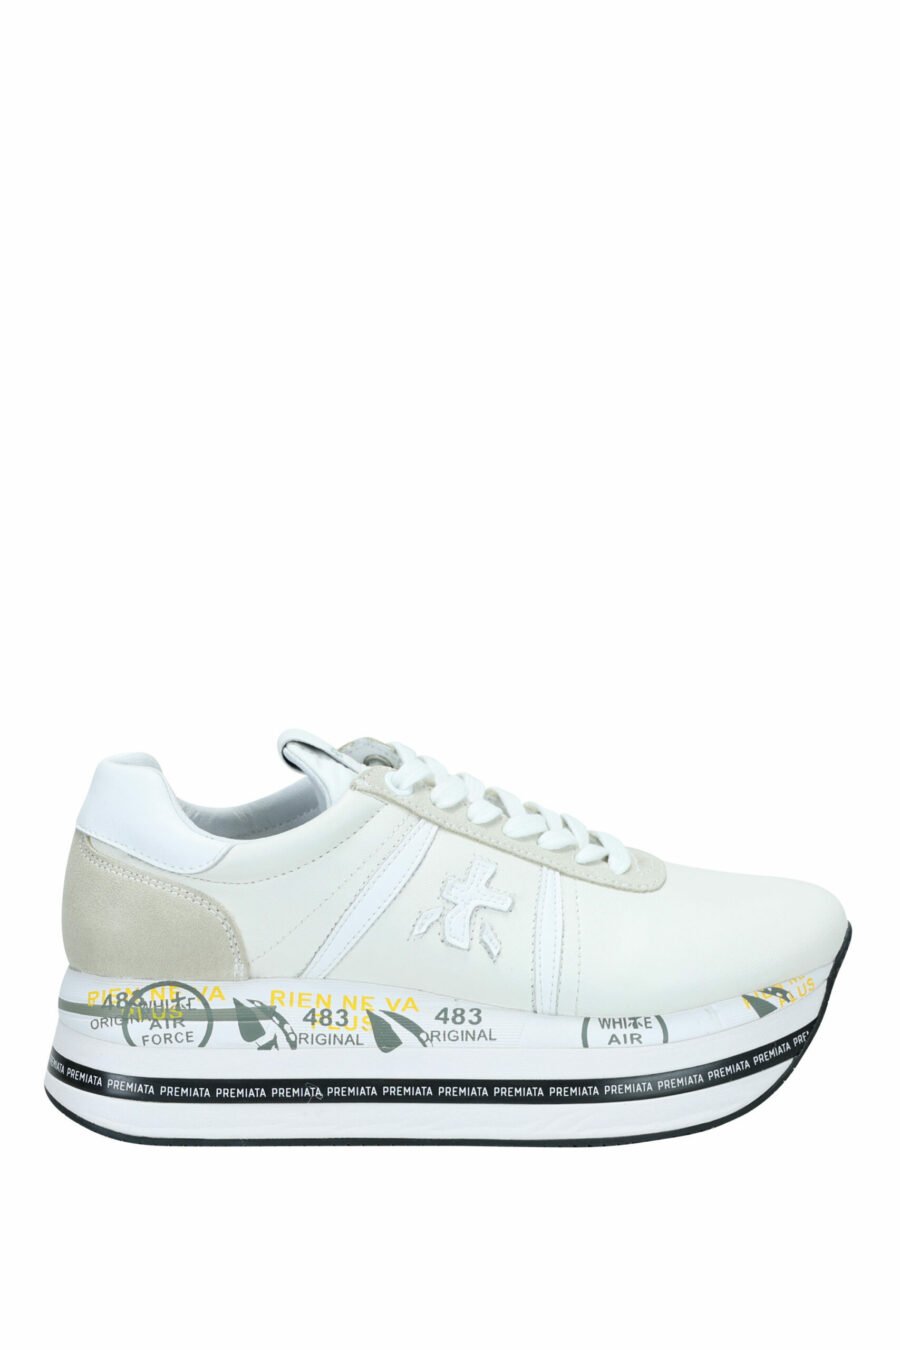 Zapatillas blancas con beige y plataforma "Beth 5603" - 8058325981902 scaled